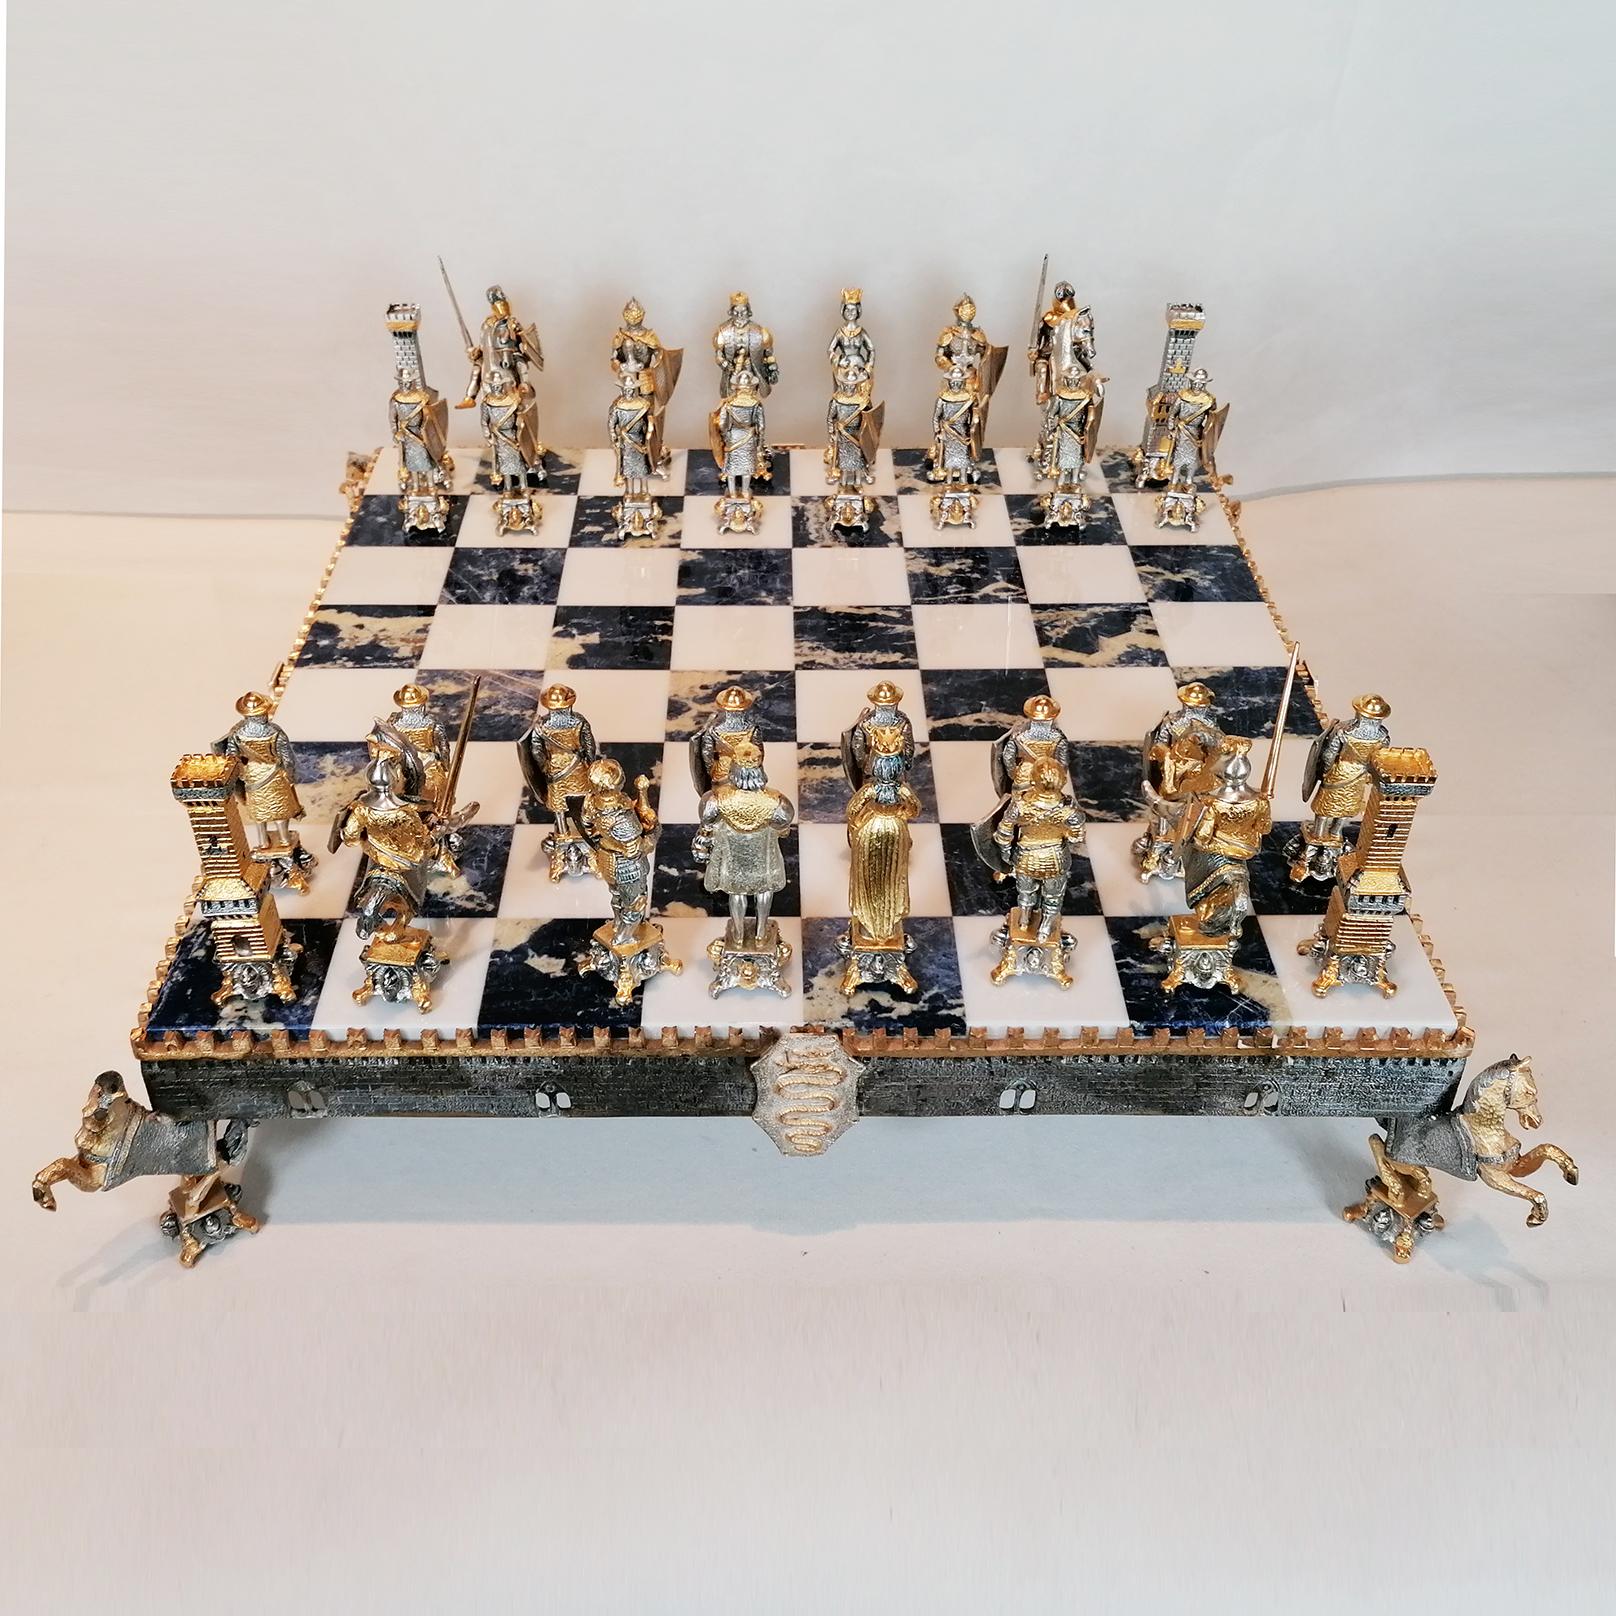 Beeindruckende Sterling Silber Schachbrett mittelalterlichen Stil Schachspiel.
Das von ARVAL ARGENTI VALENZA hergestellte Schachbrett aus weißem Marmor und Sodalith wird von einem Rahmen aus STERLINGSILBER getragen, der im Gussverfahren hergestellt